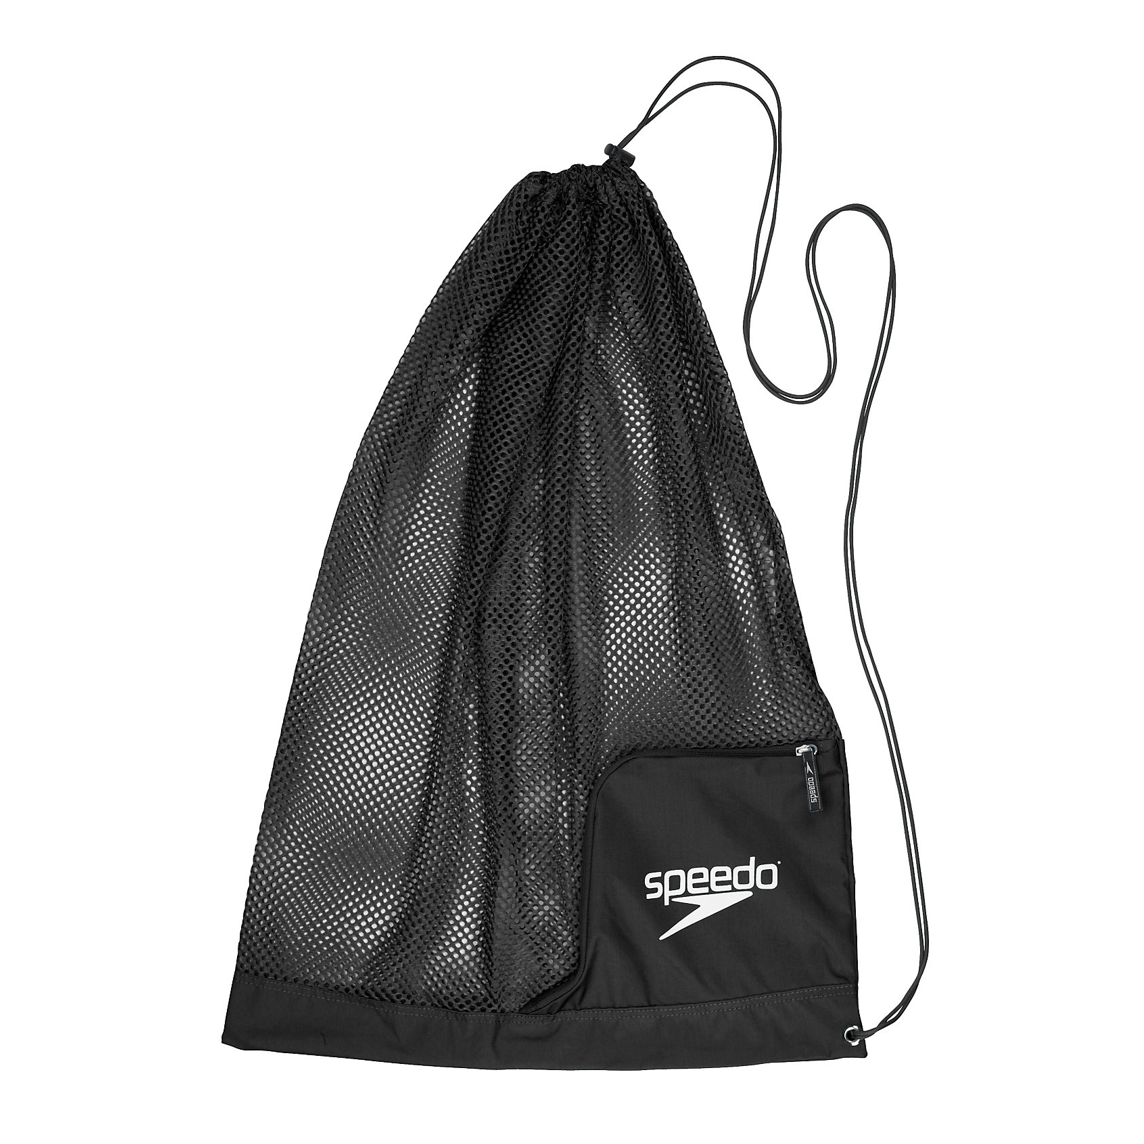 dek leerboek vergaan Speedo Basic Ventilator Mesh Pool Bag – Pack for Camp